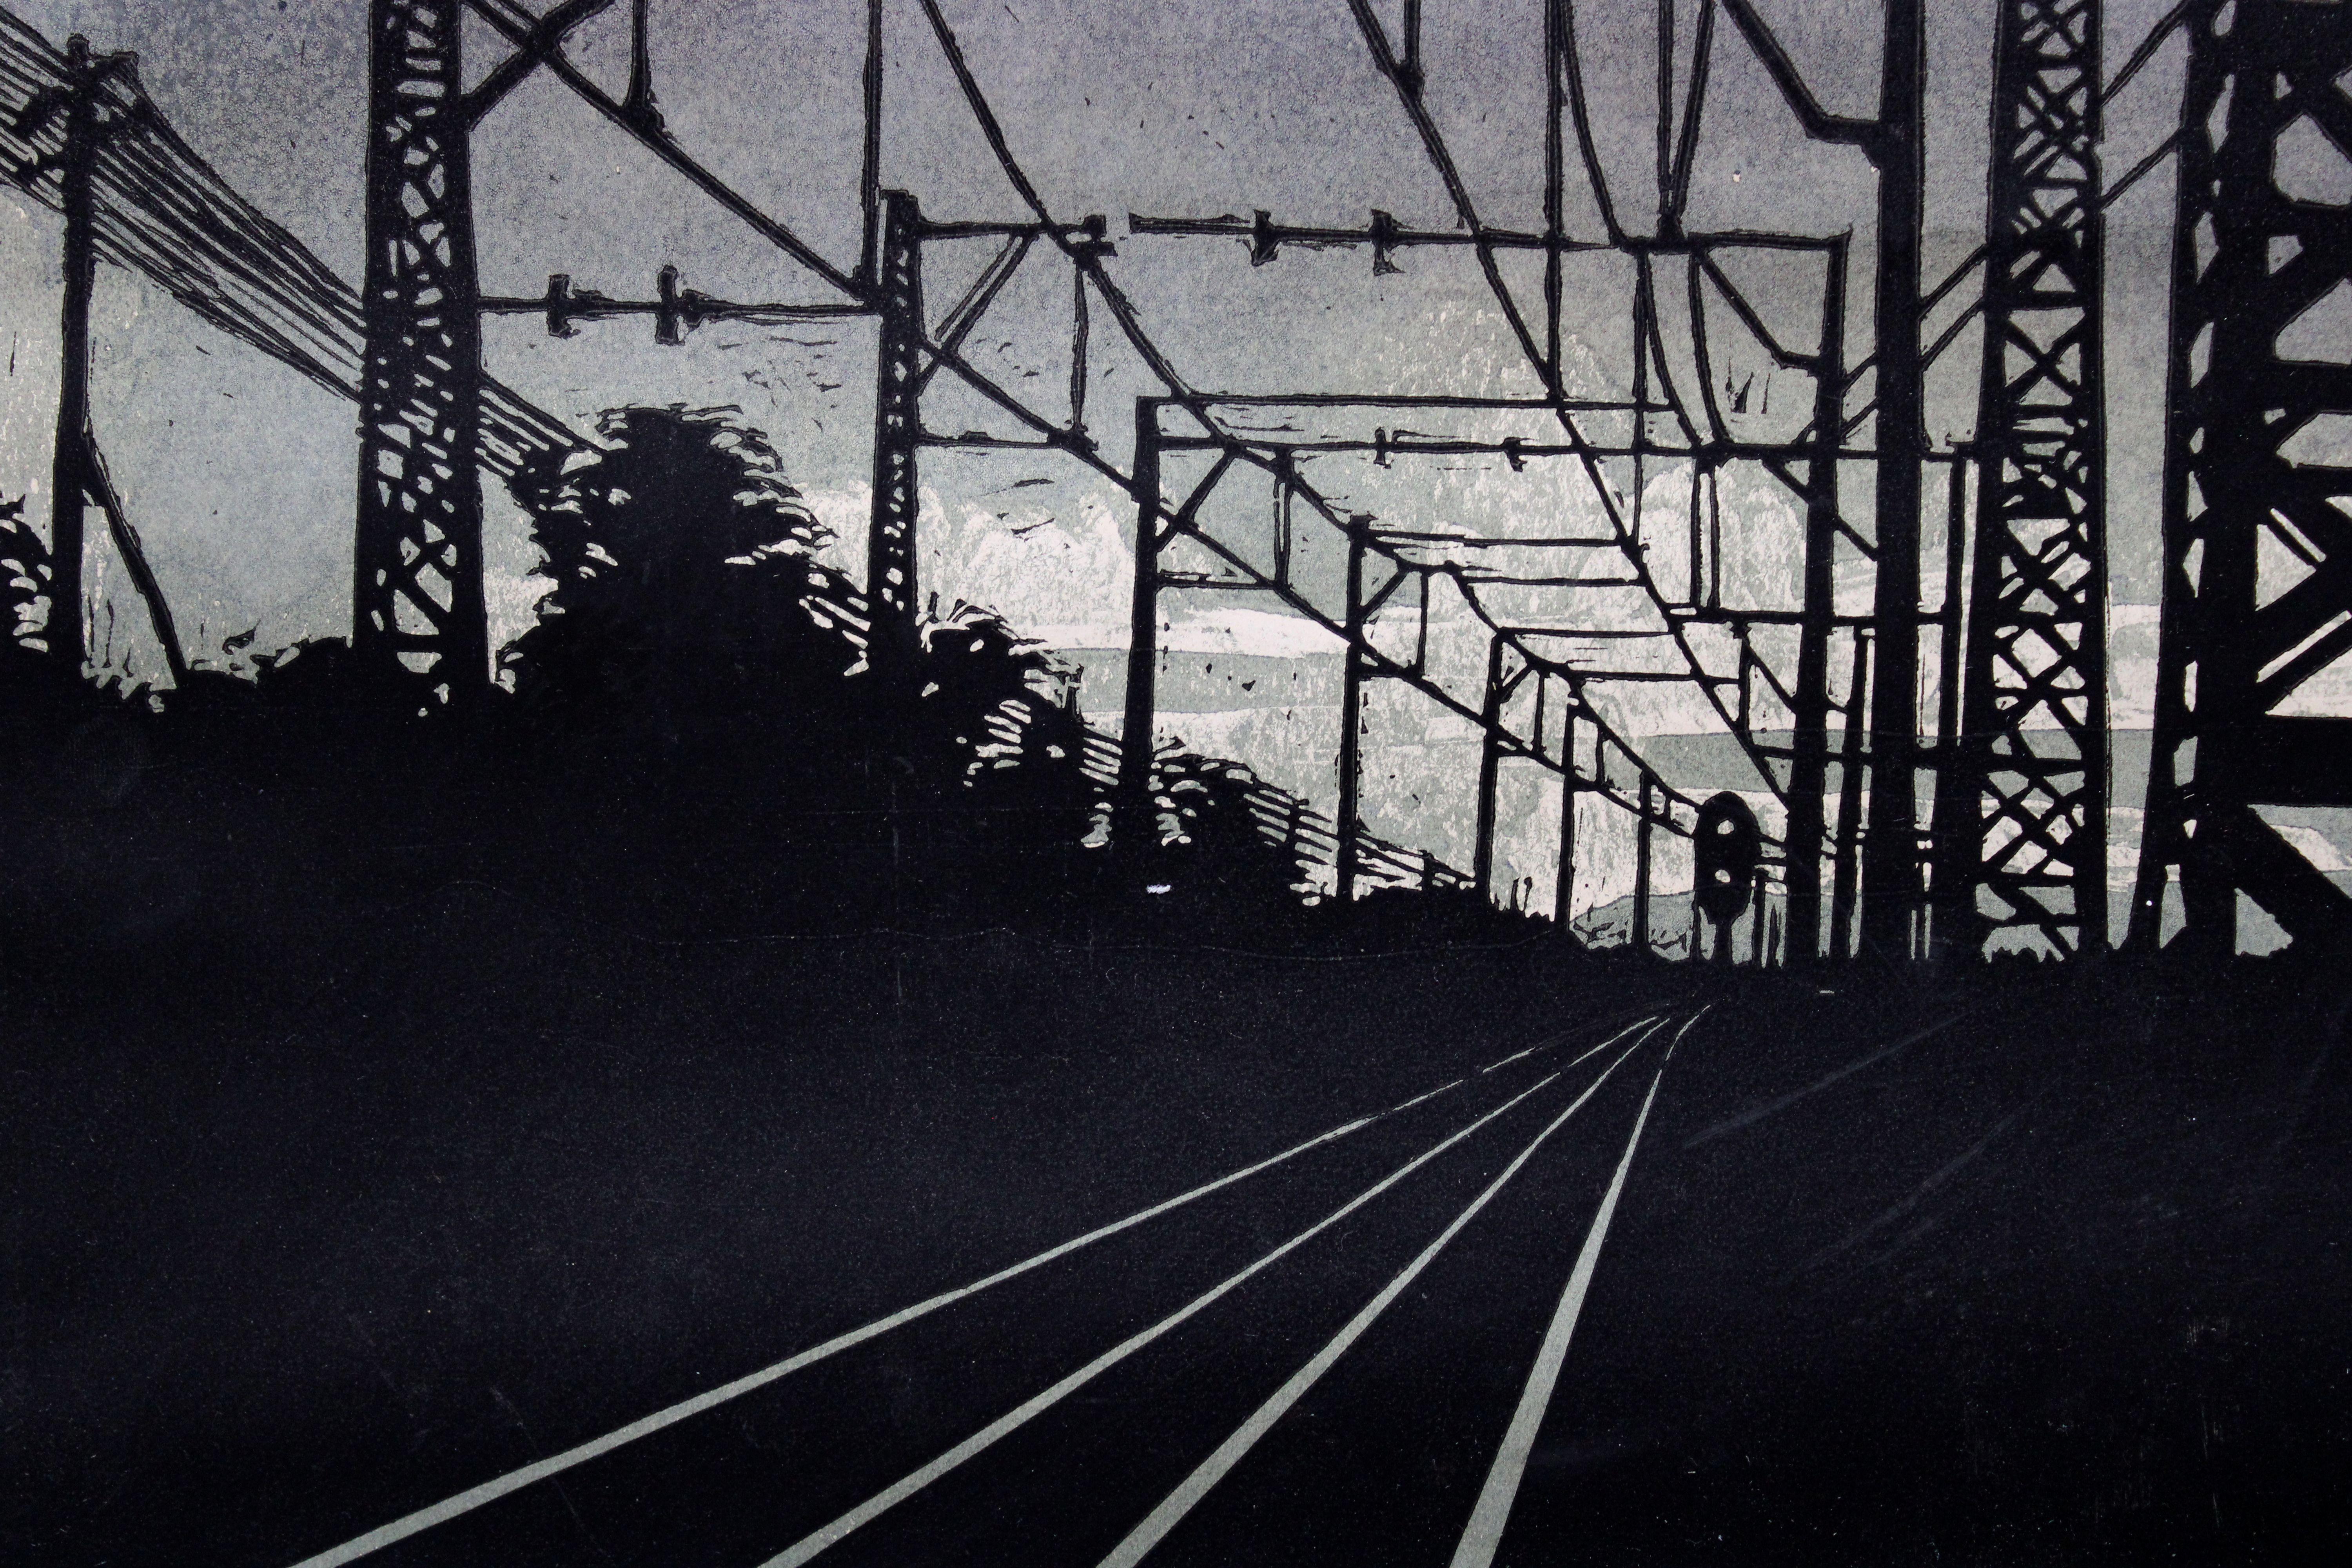 In Jurmala

1960, 1/10, Papier, Linolschnitt, 45x37 cm

Das Kunstwerk zeigt eine Eisenbahnlandschaft, speziell in Jurmala, während der Abendstunden. Die dunklen Farbtöne der Komposition vermitteln eine gedämpfte oder stimmungsvolle Atmosphäre. 

Bei